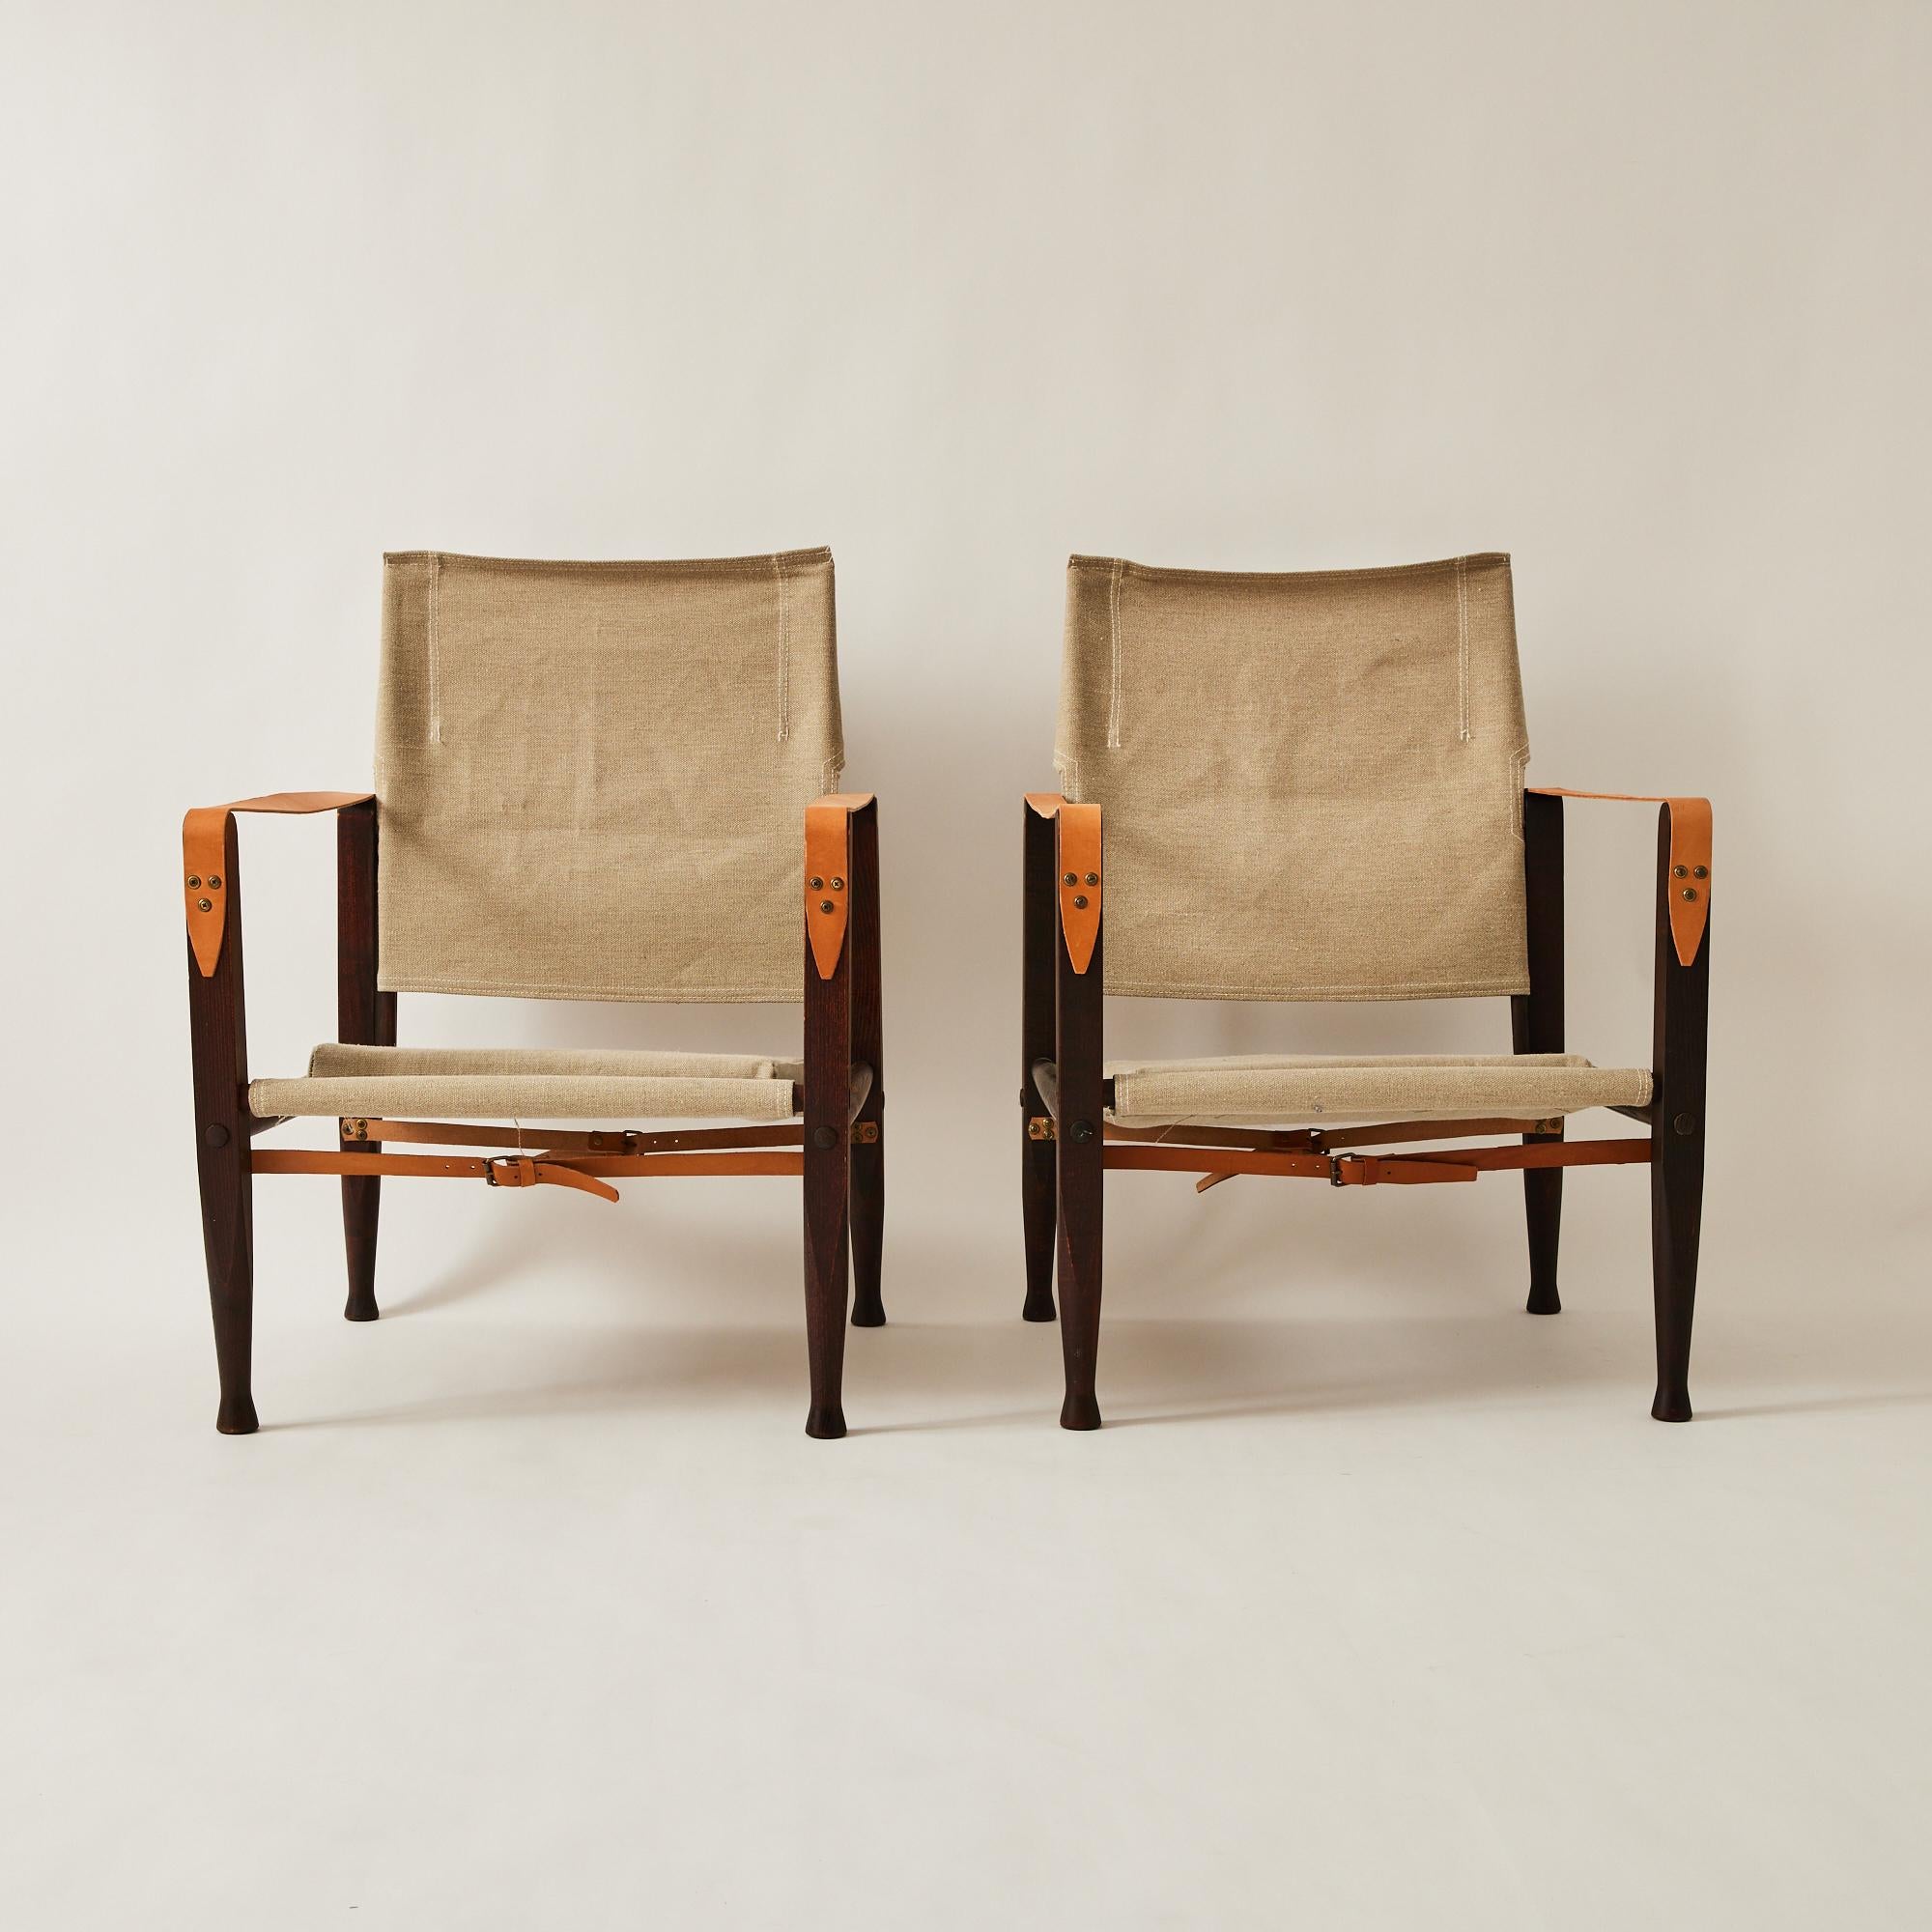 Ces chaises Safari ont été conçues par le designer danois Kaare Klint, connu comme le père du modernisme danois. Ils ont été conçus dans les années 1930 et fabriqués par Rud Rasmussen dans les années 1960. Klint s'est inspiré d'images de la chaise